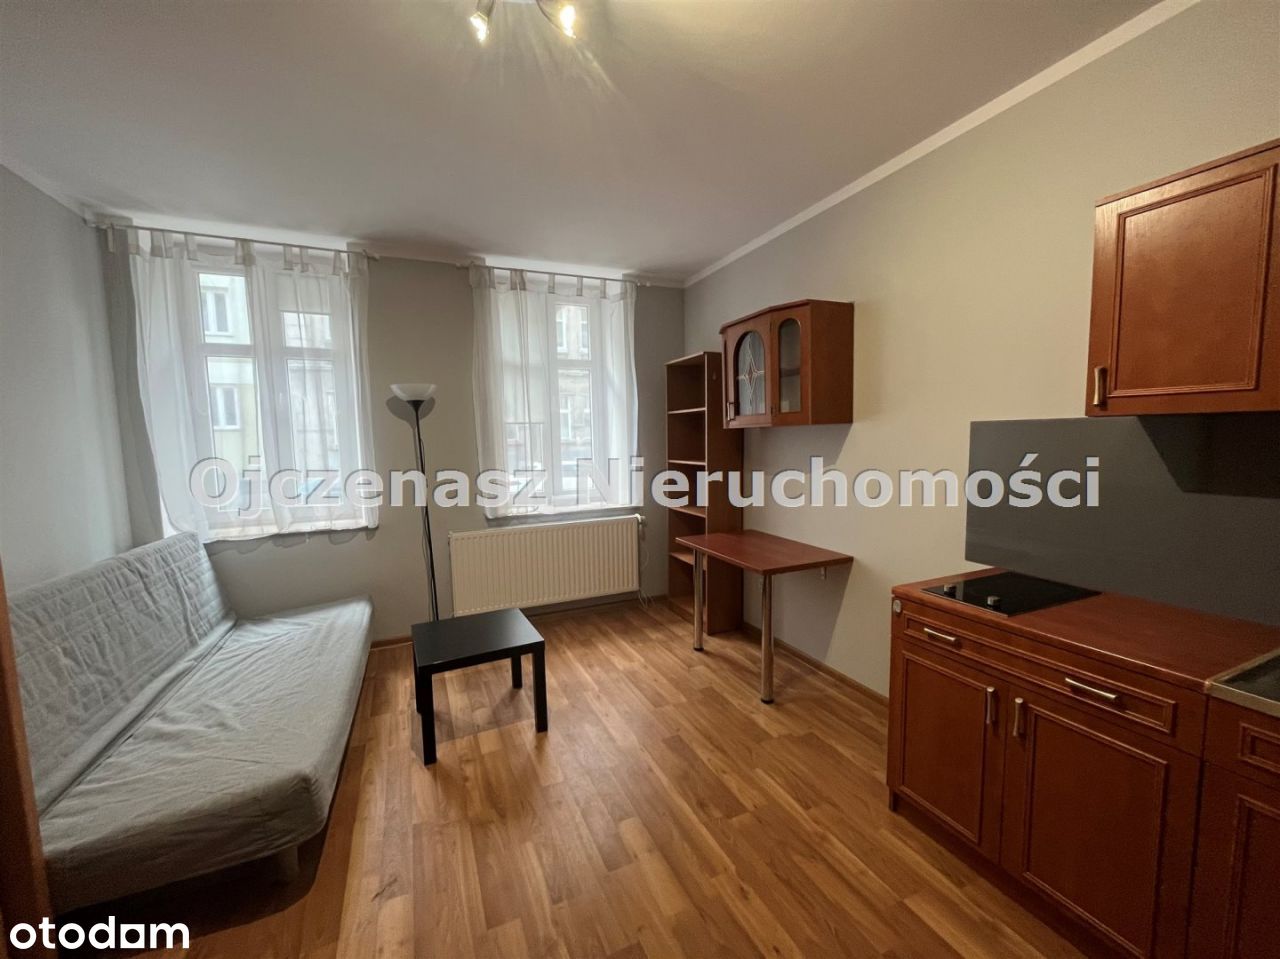 Mieszkanie, 25 m², Bydgoszcz